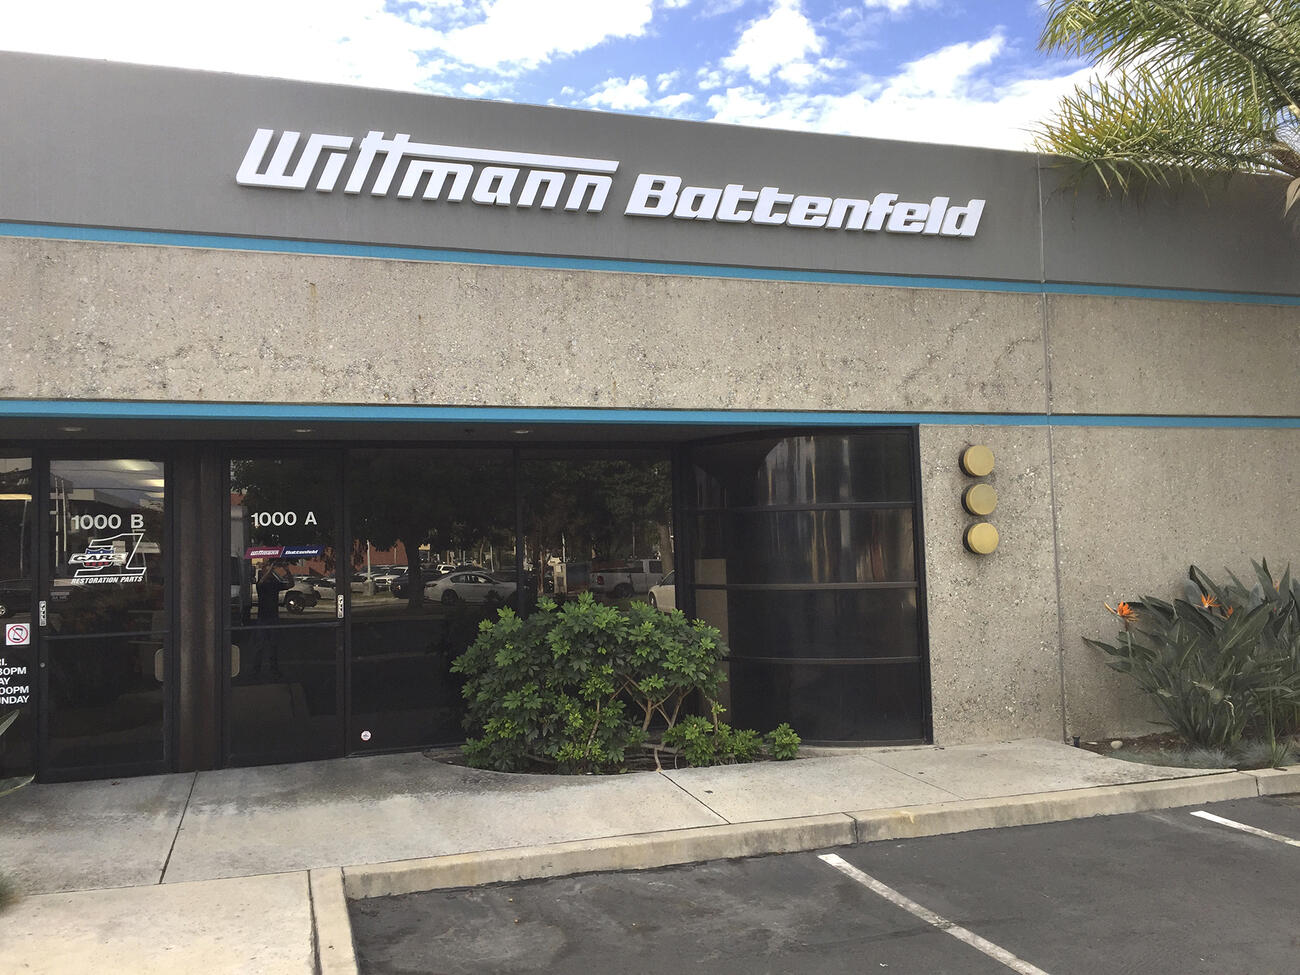 WITTMANN BATTENFELD, INC. – West Coast Tech Center